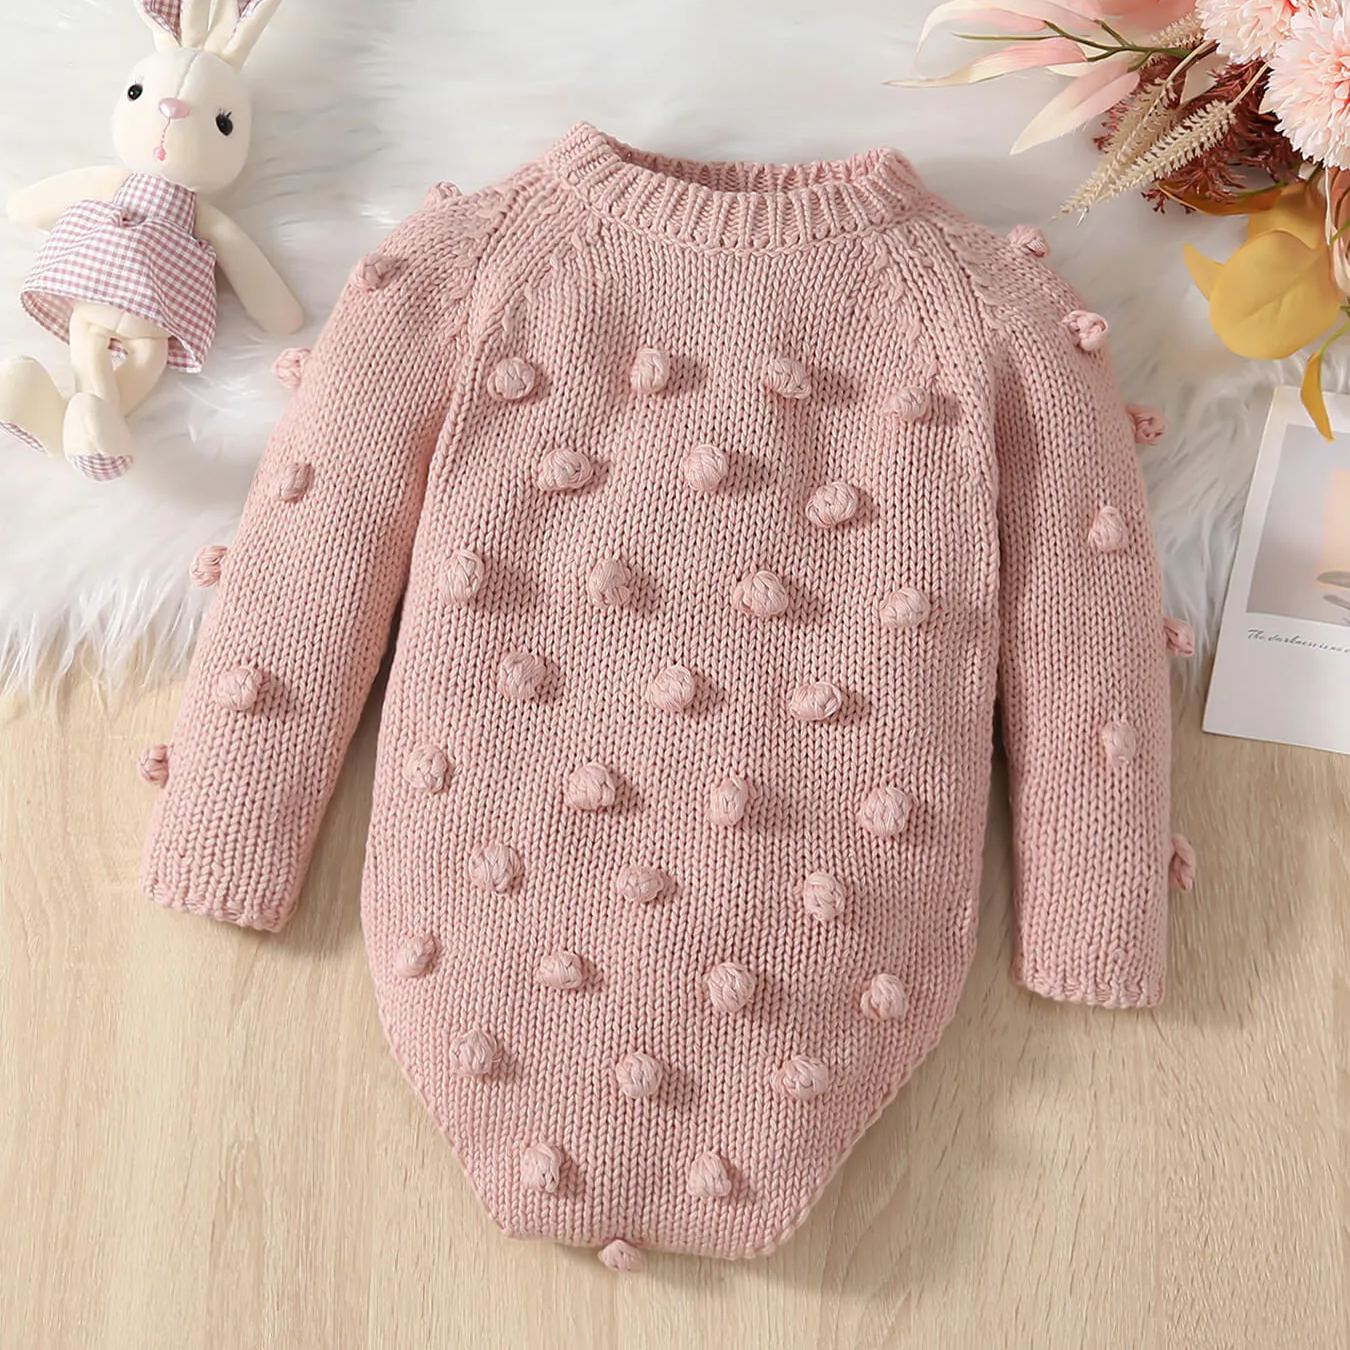 Baby Handmade Pink Sweater